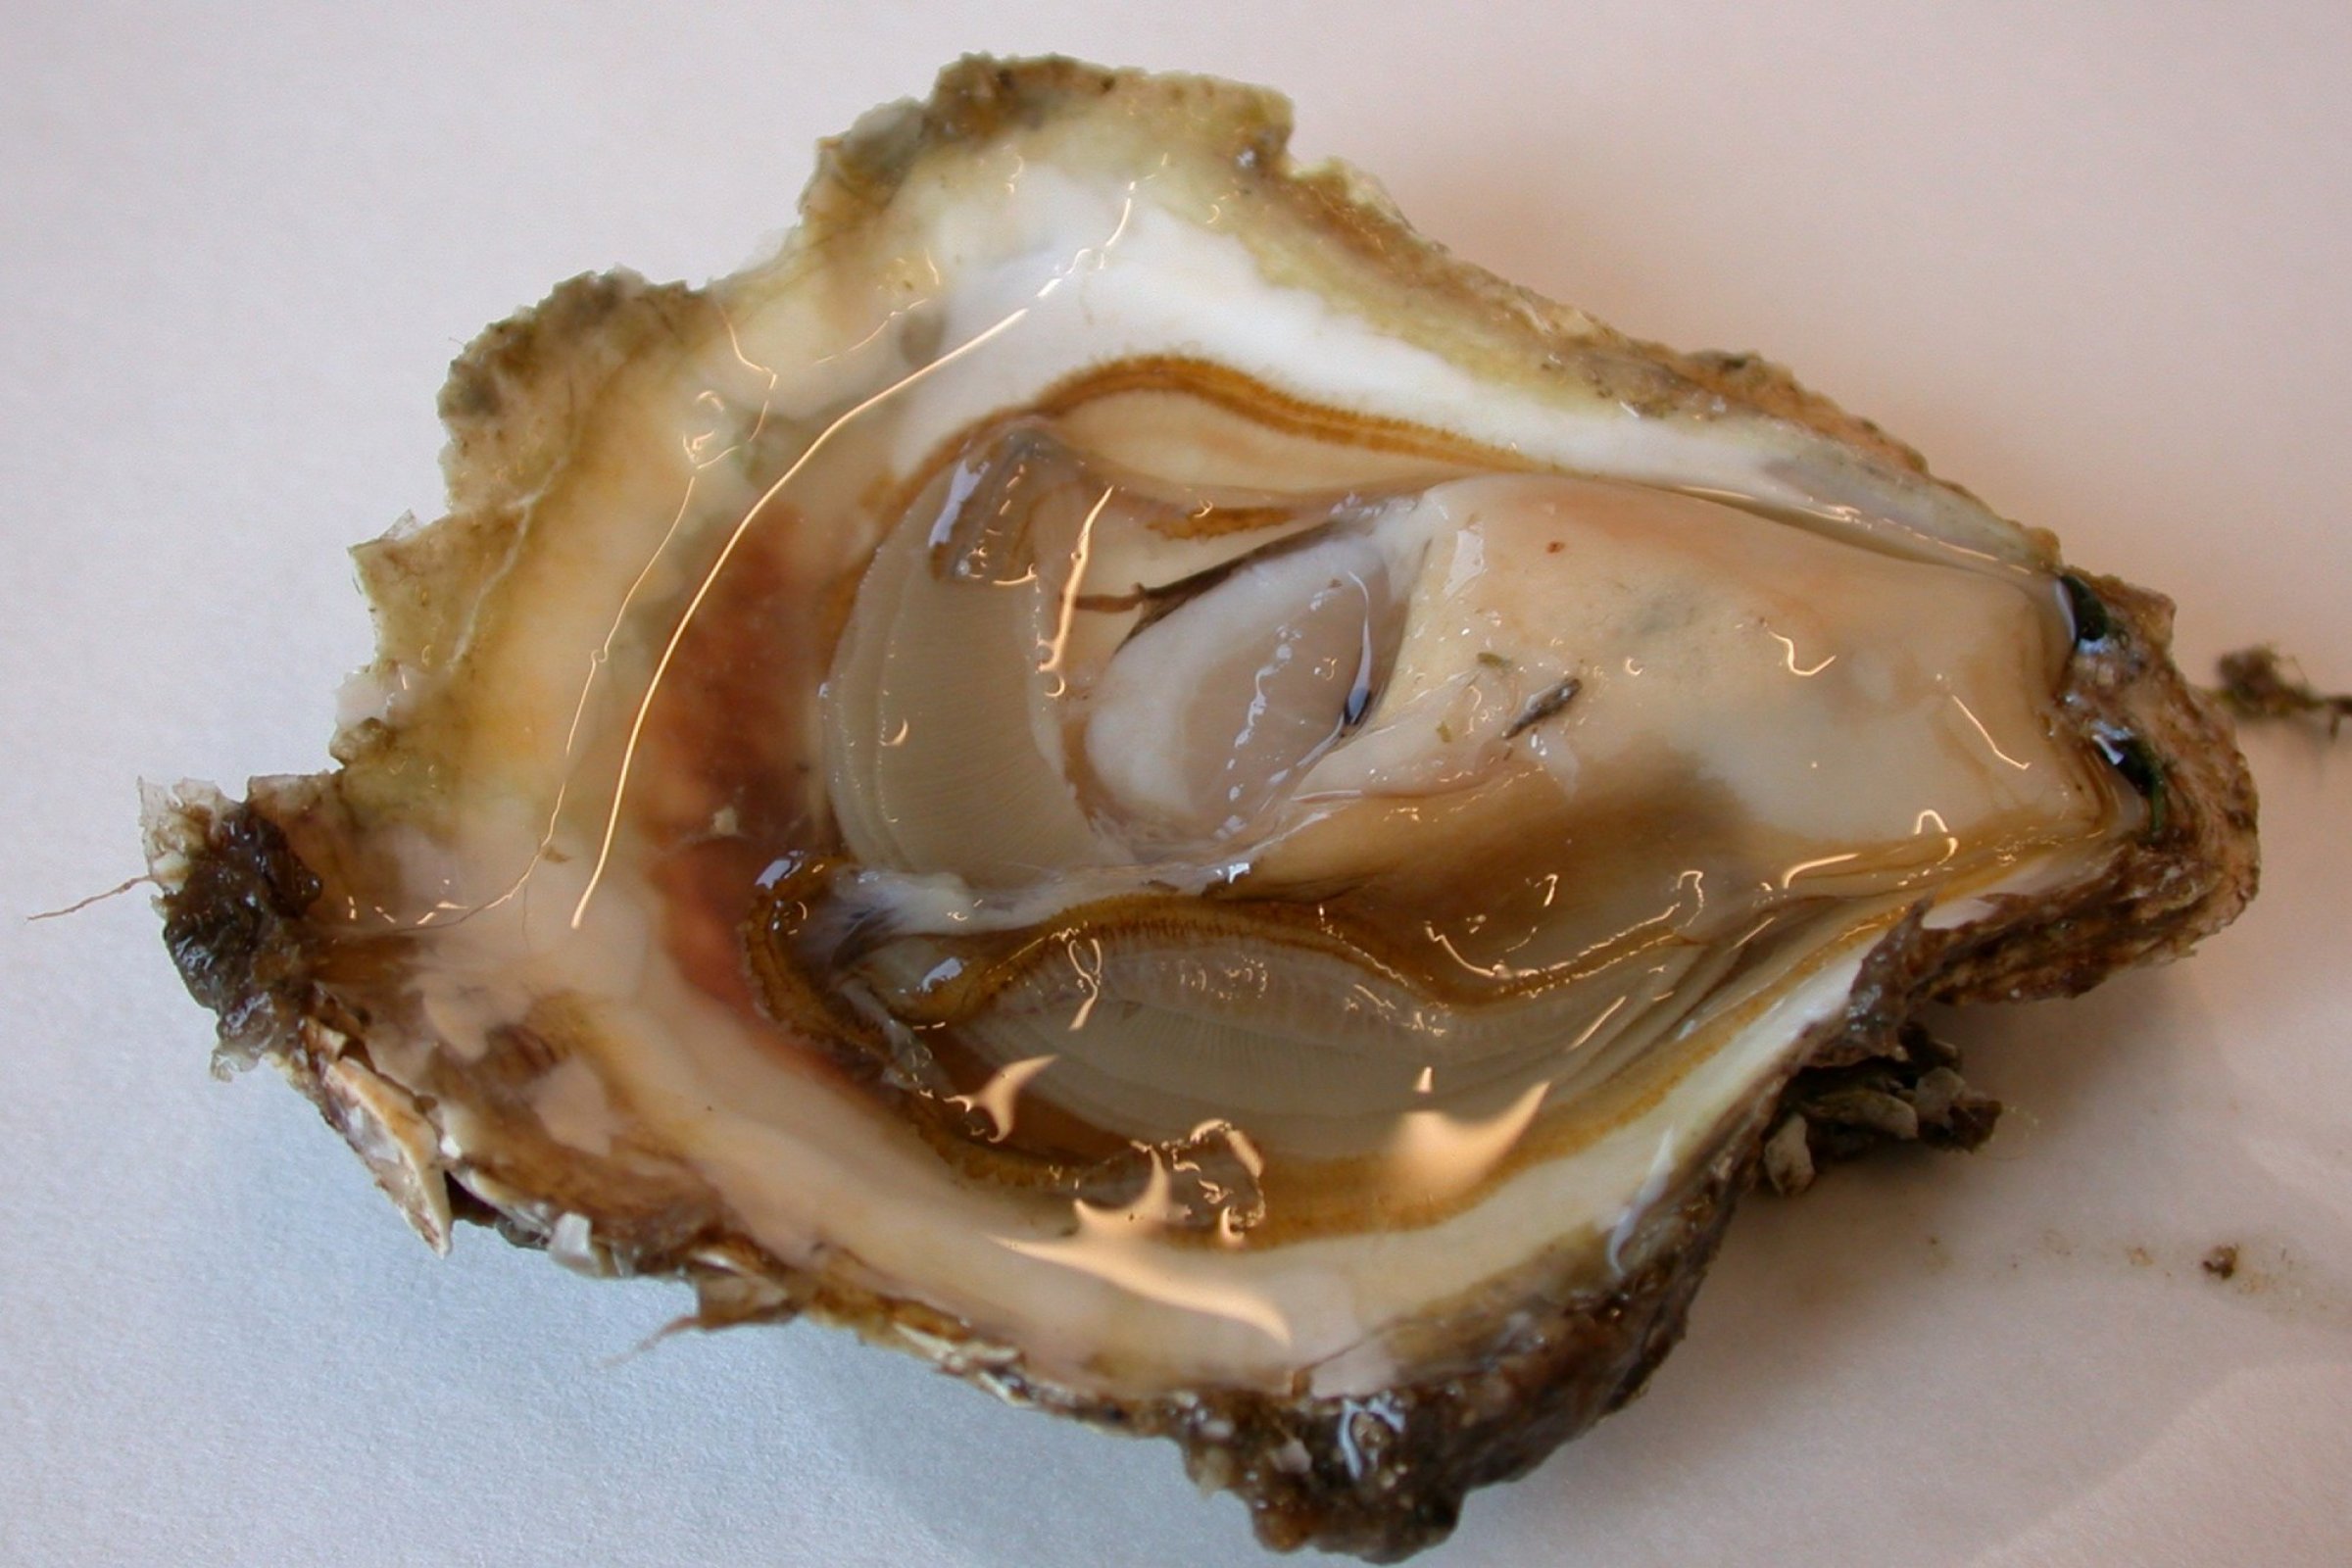 Bonamiose er ein alvorleg skjelsjukdom som kan gi høg dødelegheit hos østers. Foto: Hege Hellberg.